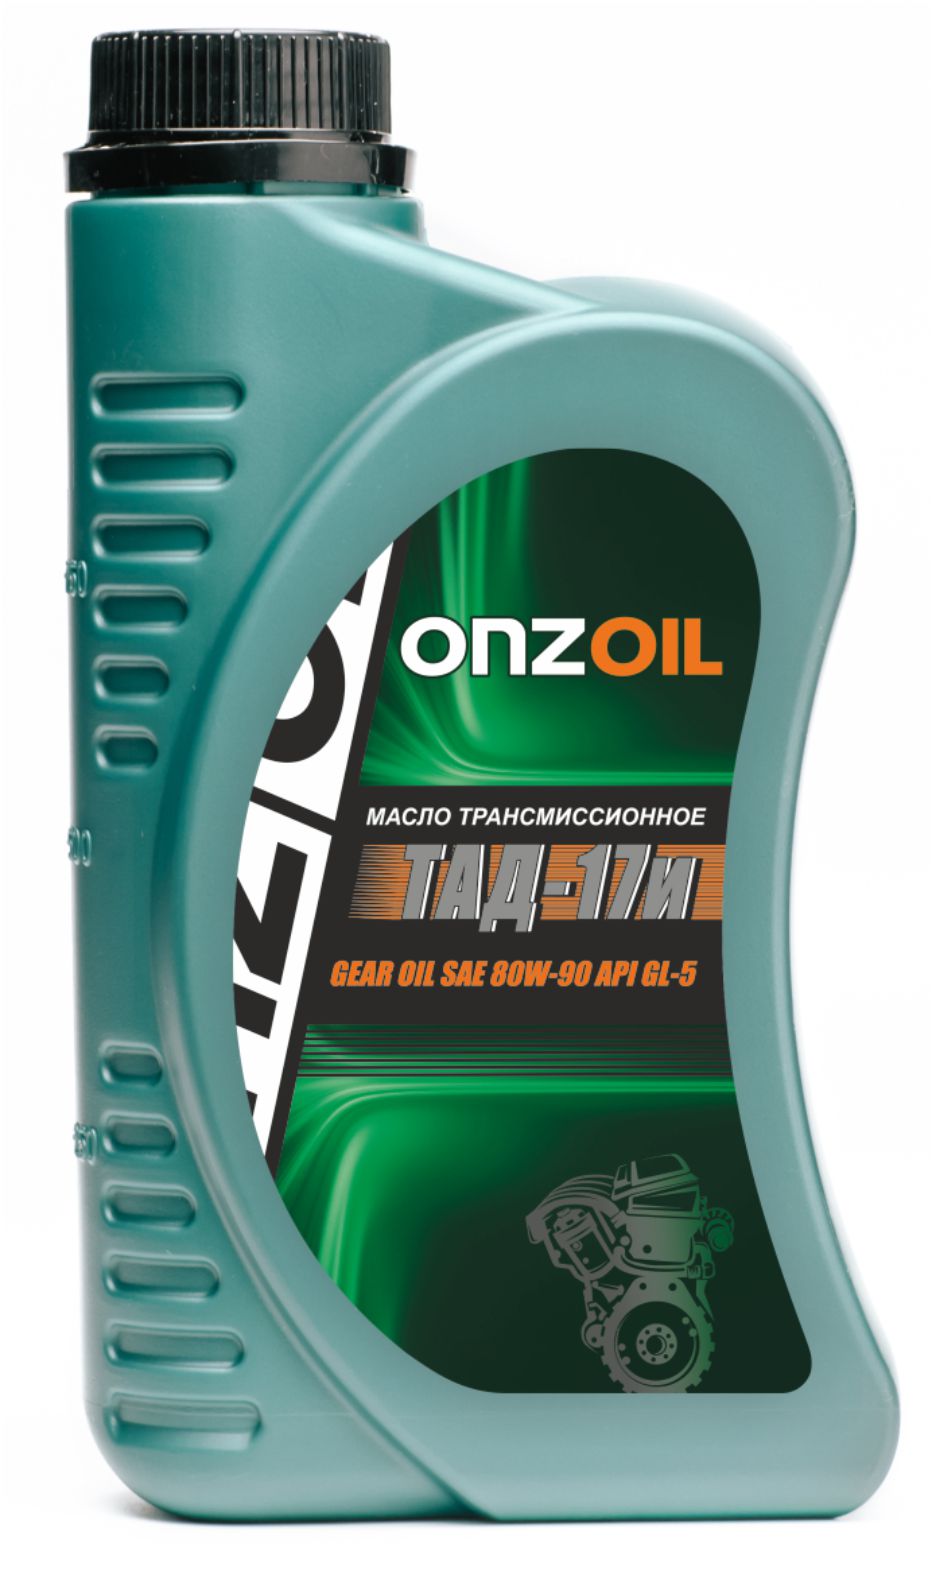 Масло трансмиссионное Onzoil Gear oil 80W-90 GL-5 Pro 900 мл, Масла трансмиссионные